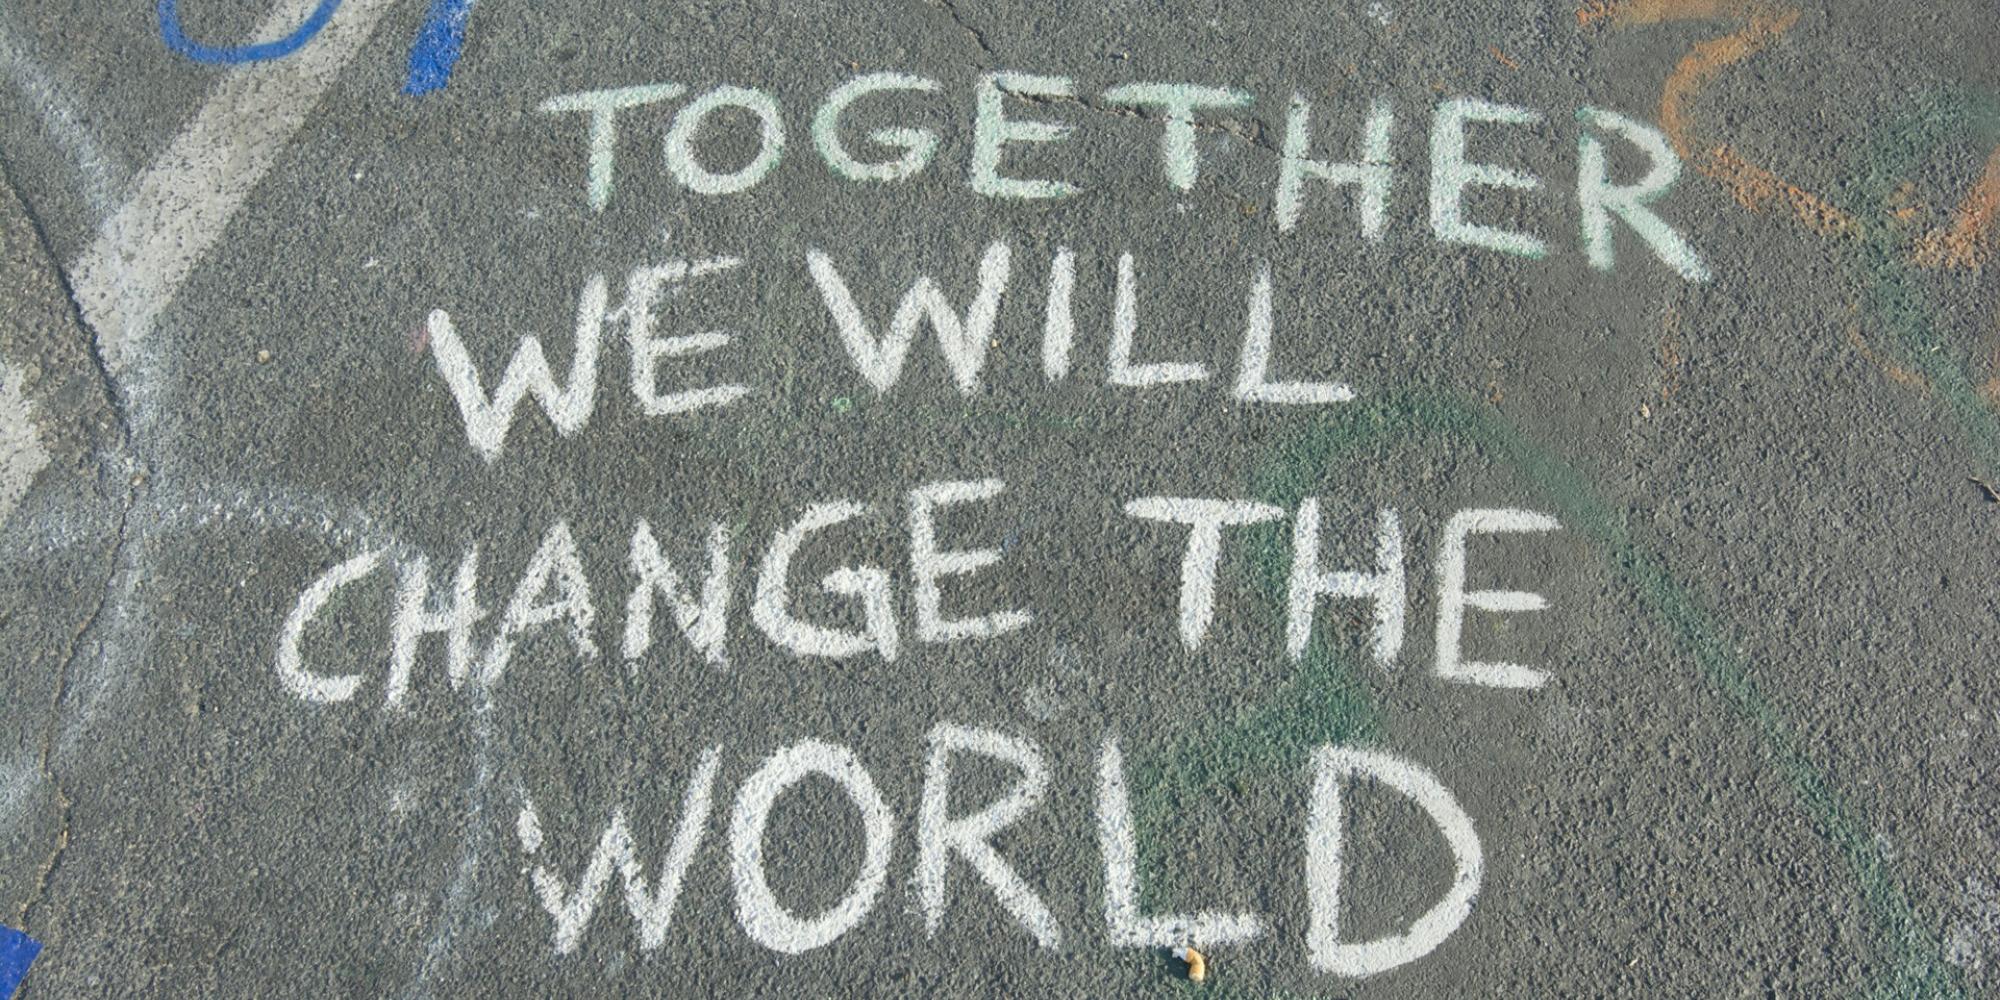 Kreidegraffito auf Asphalt mit den Worten "Together we will change the world"